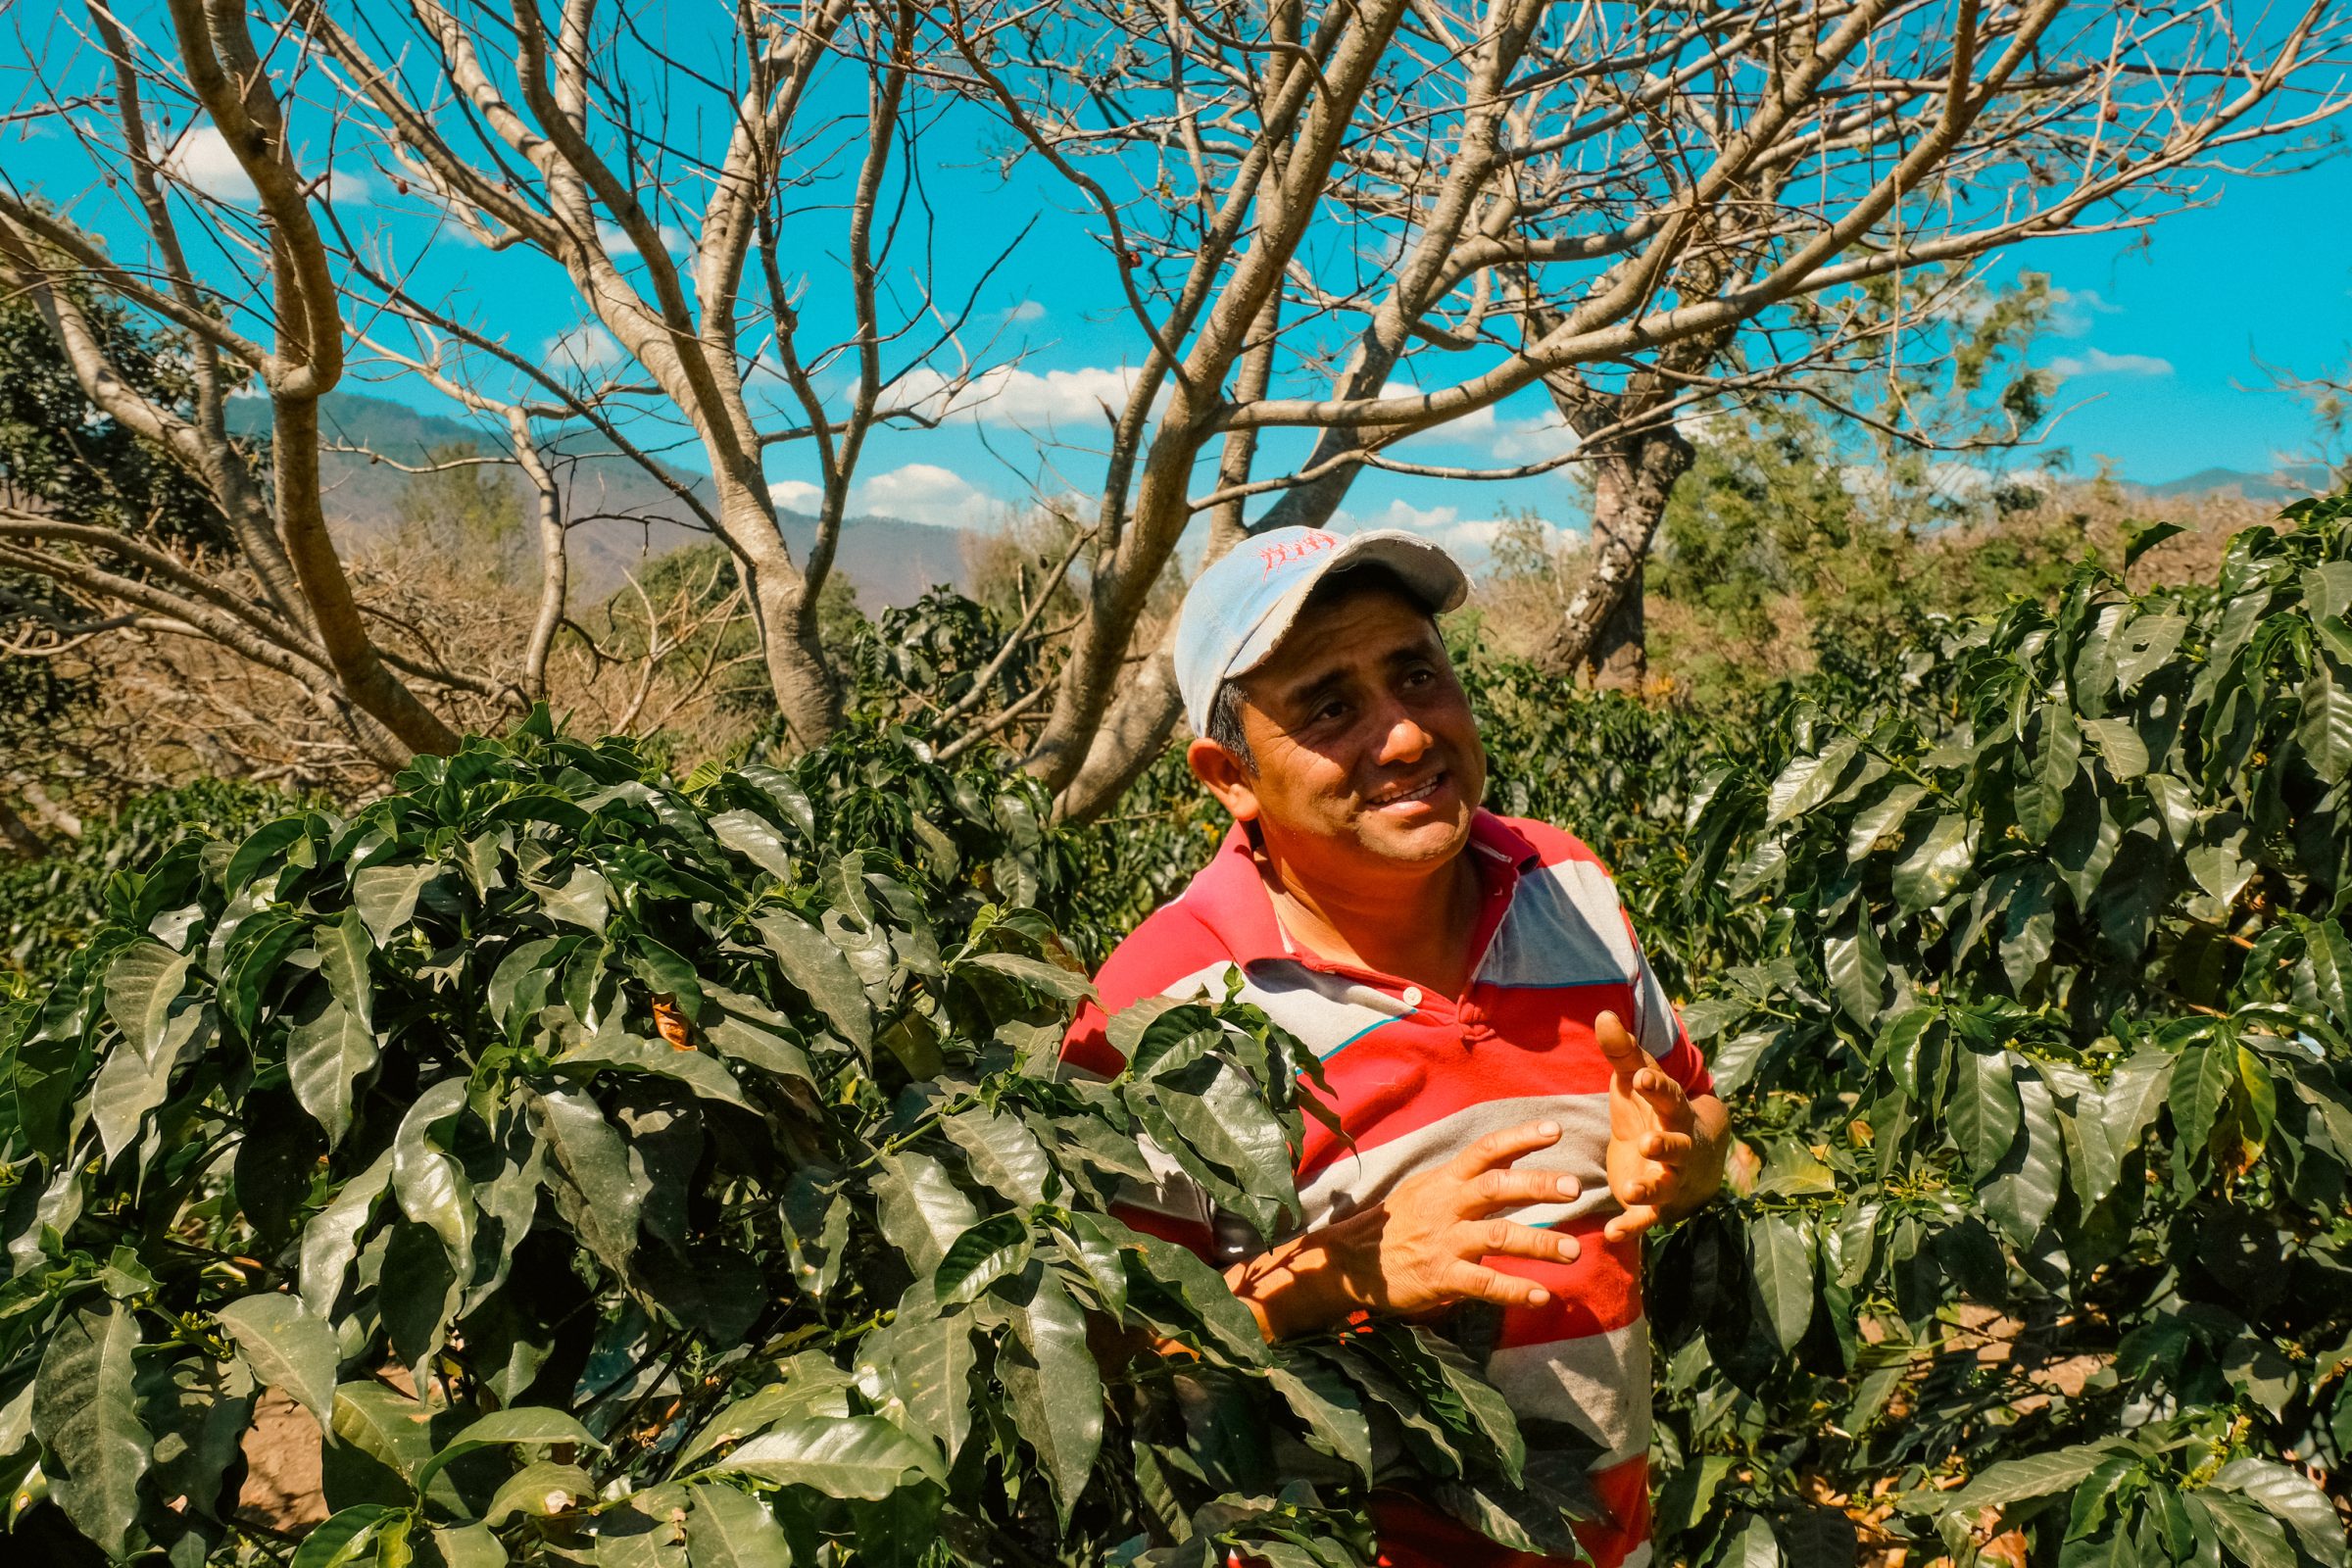 Onze gids tijdens de tour op de koffieplantage bij Antigua